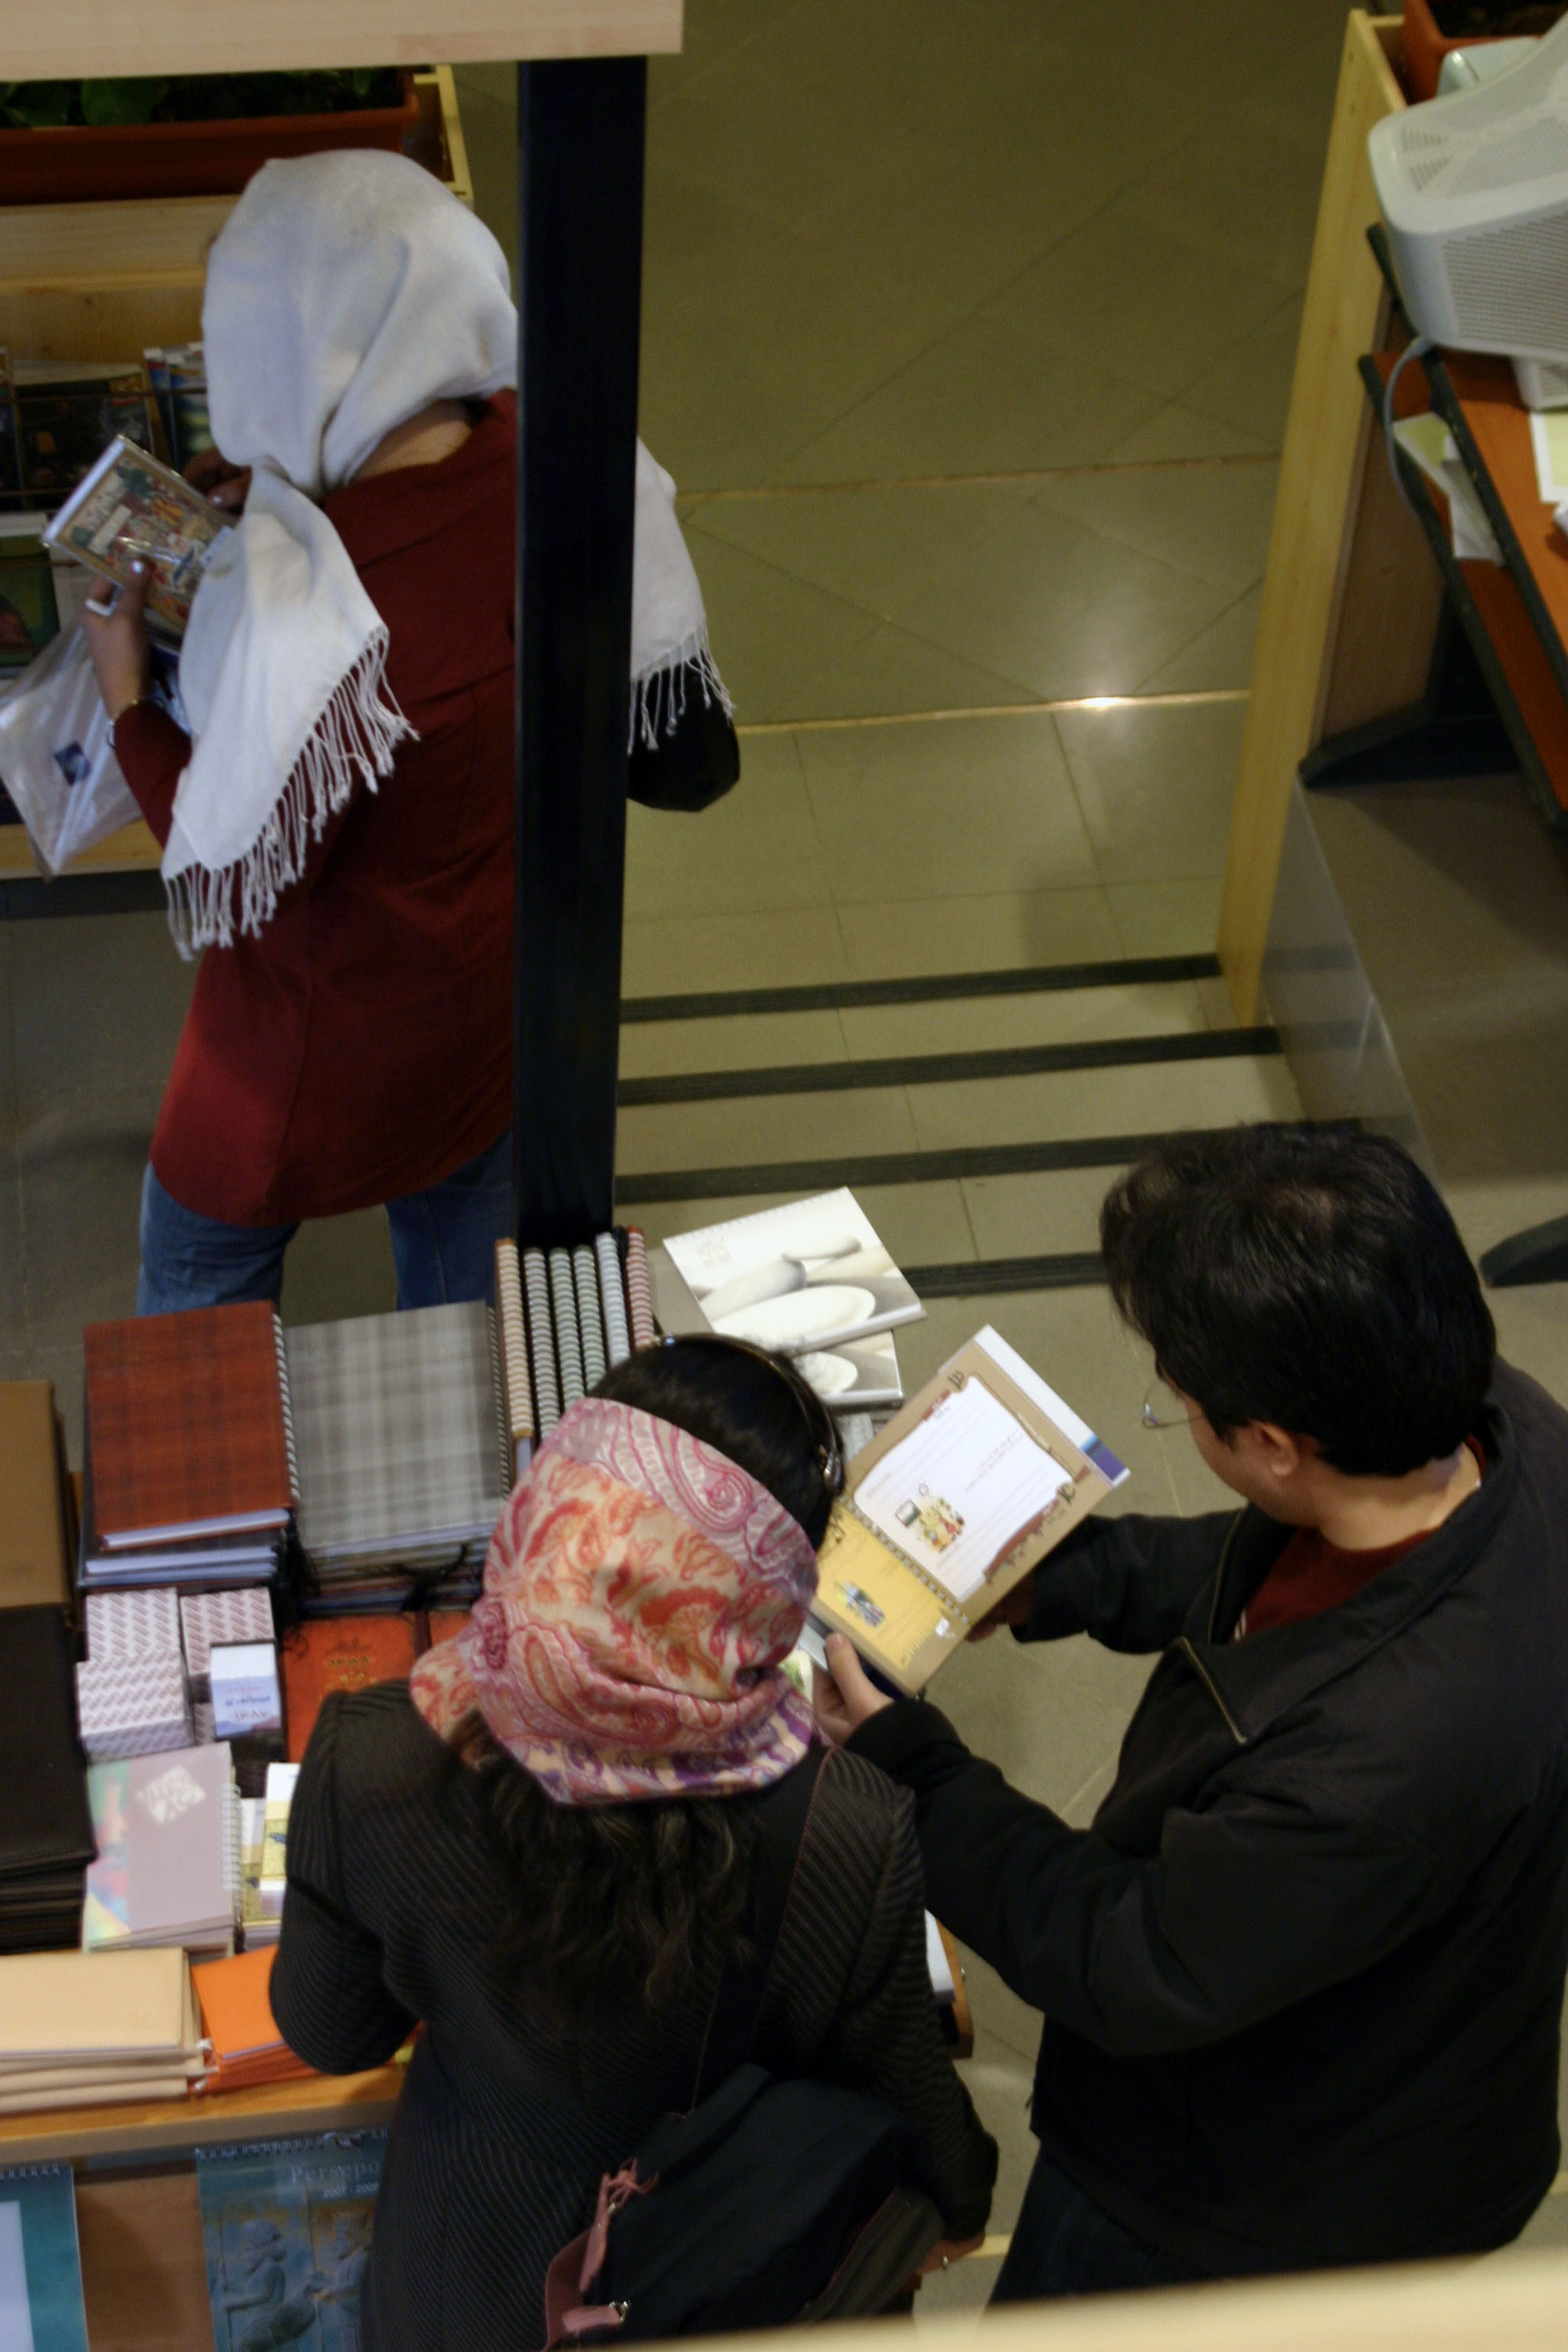 یک کتابفروشی در شمال تهران 